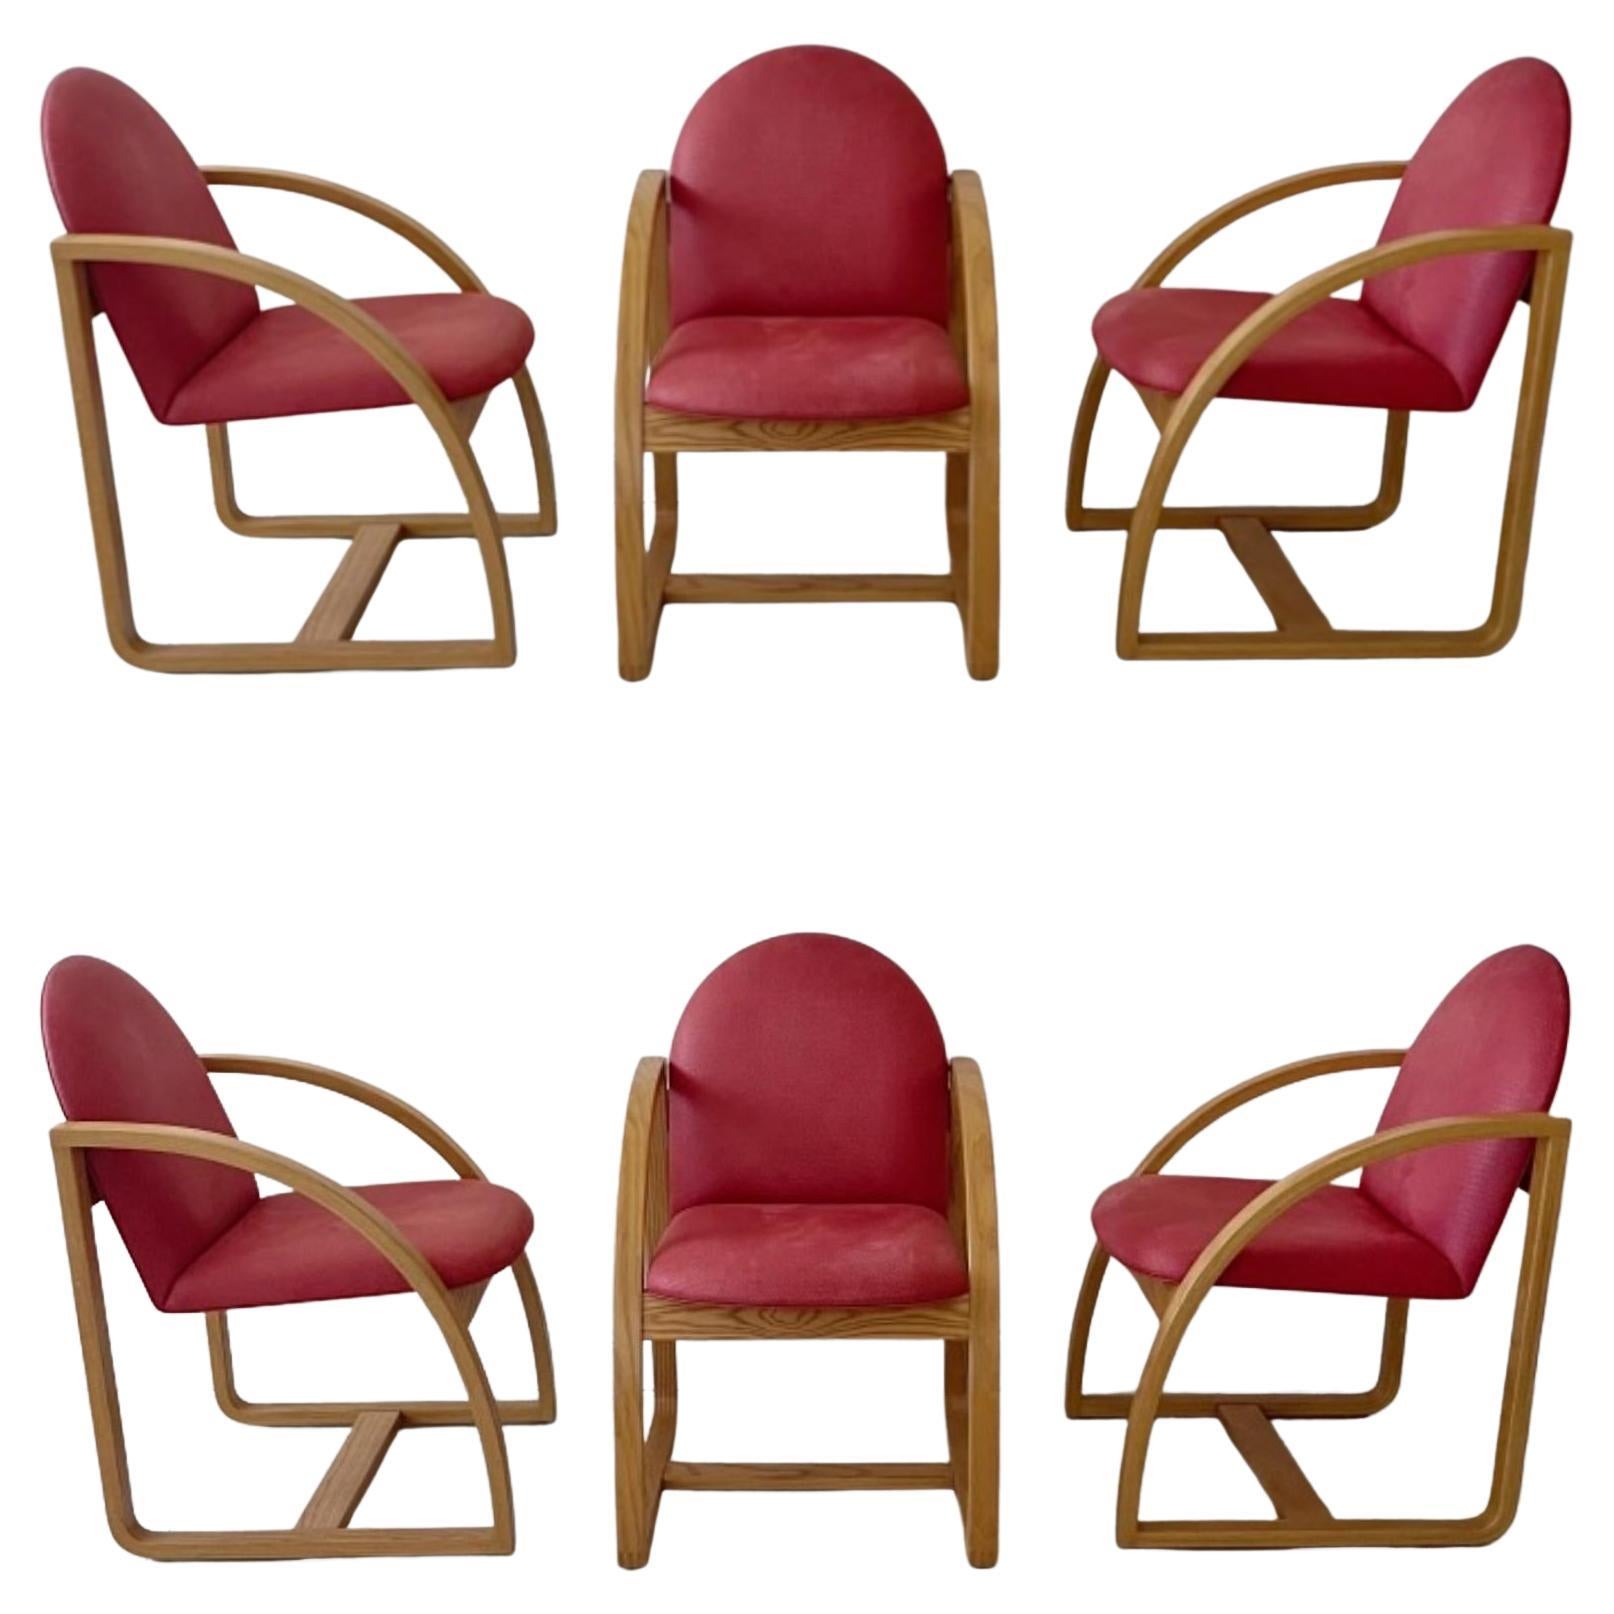 Ensemble de six chaises « Clode's » de Peter Danko, vers 1980